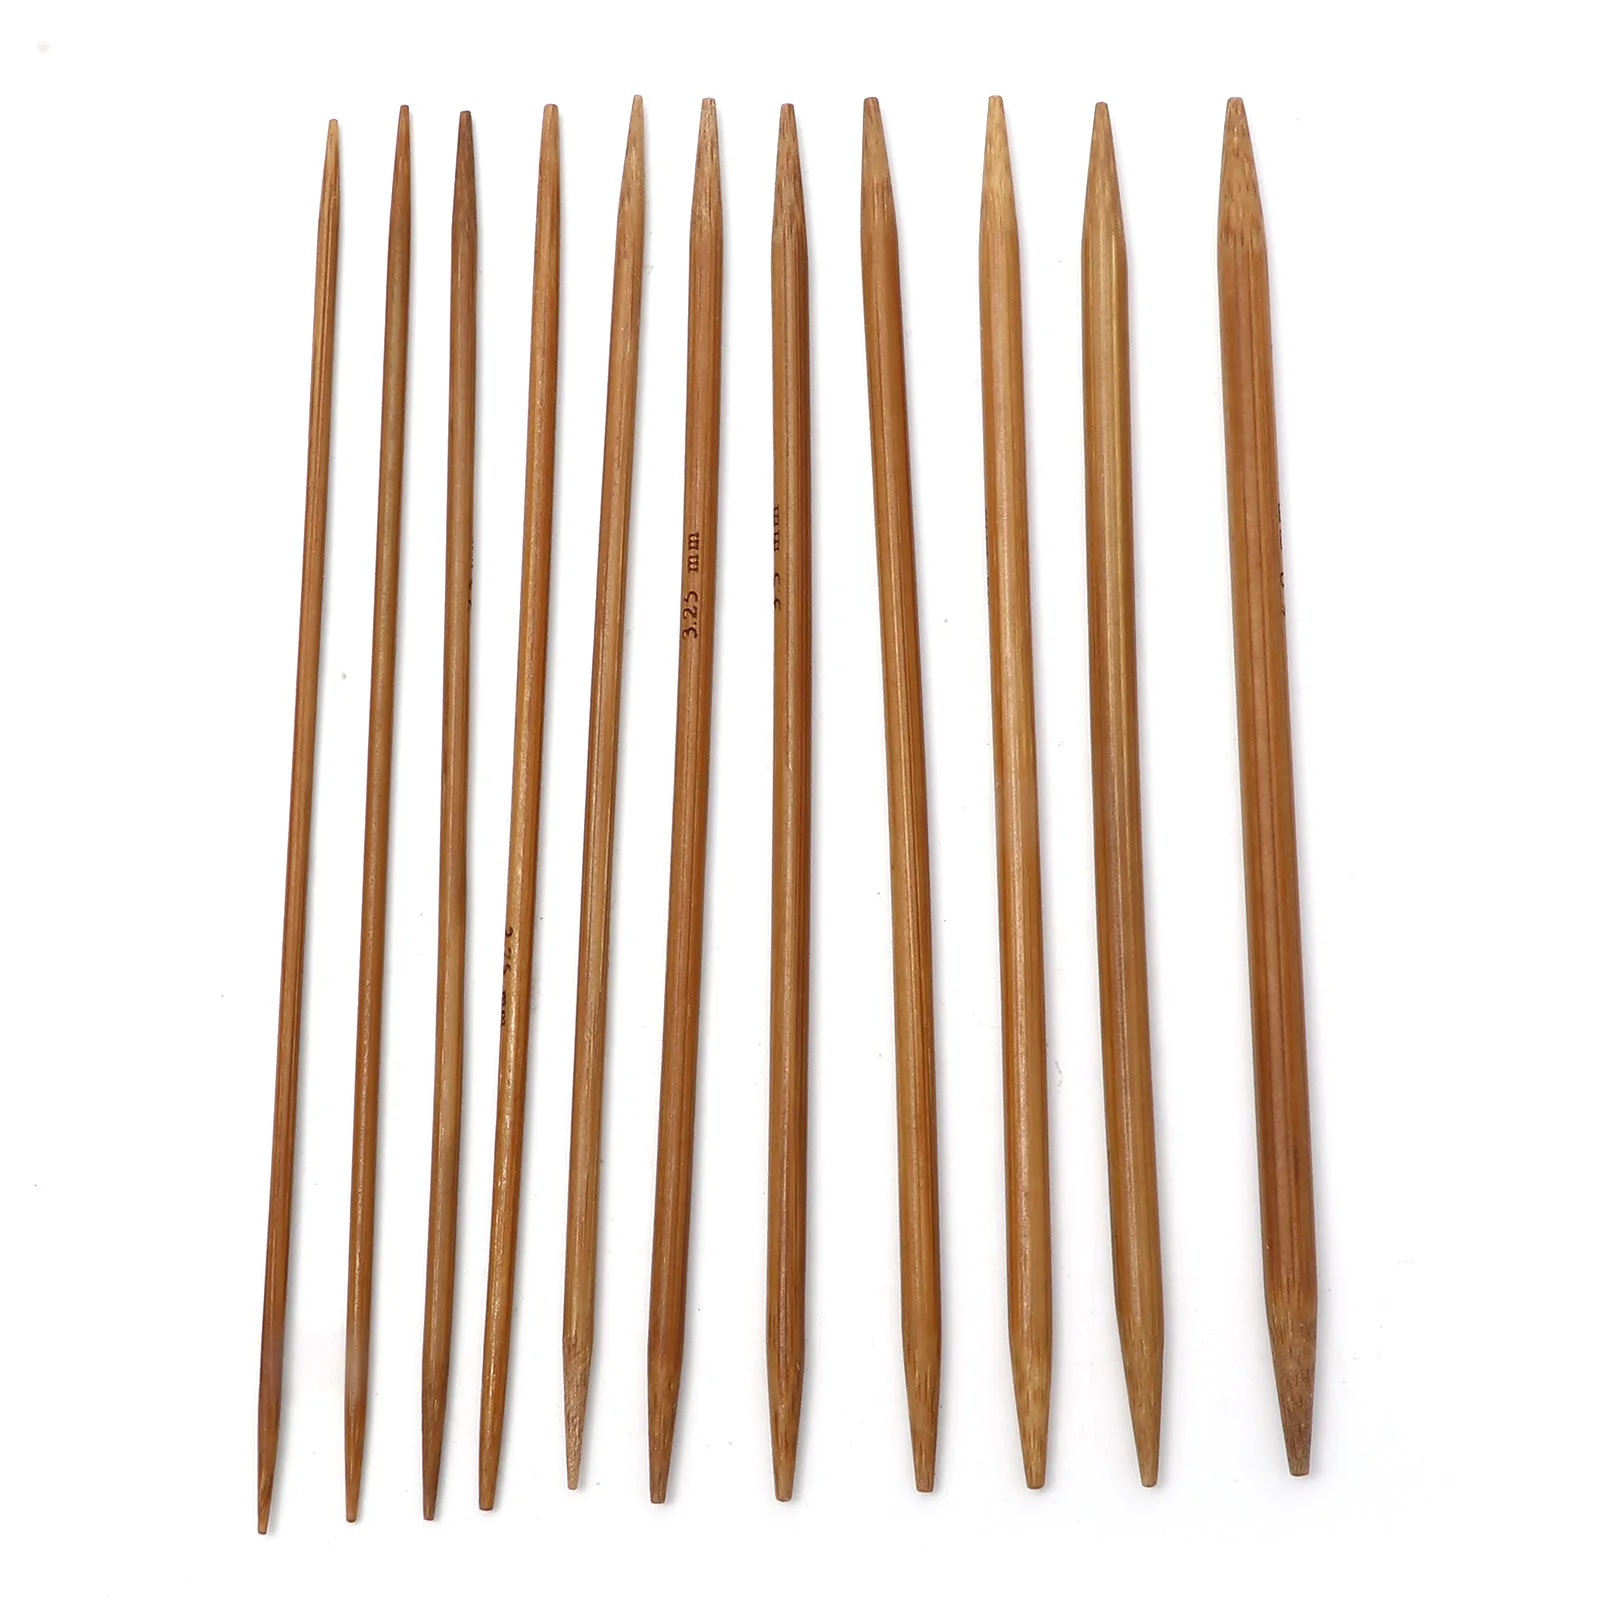 

Спицы для вязания ручной работы из бамбука с двойным острым носком, 2,0-5,0 мм, диаметром 13 см, 5-55 шт.